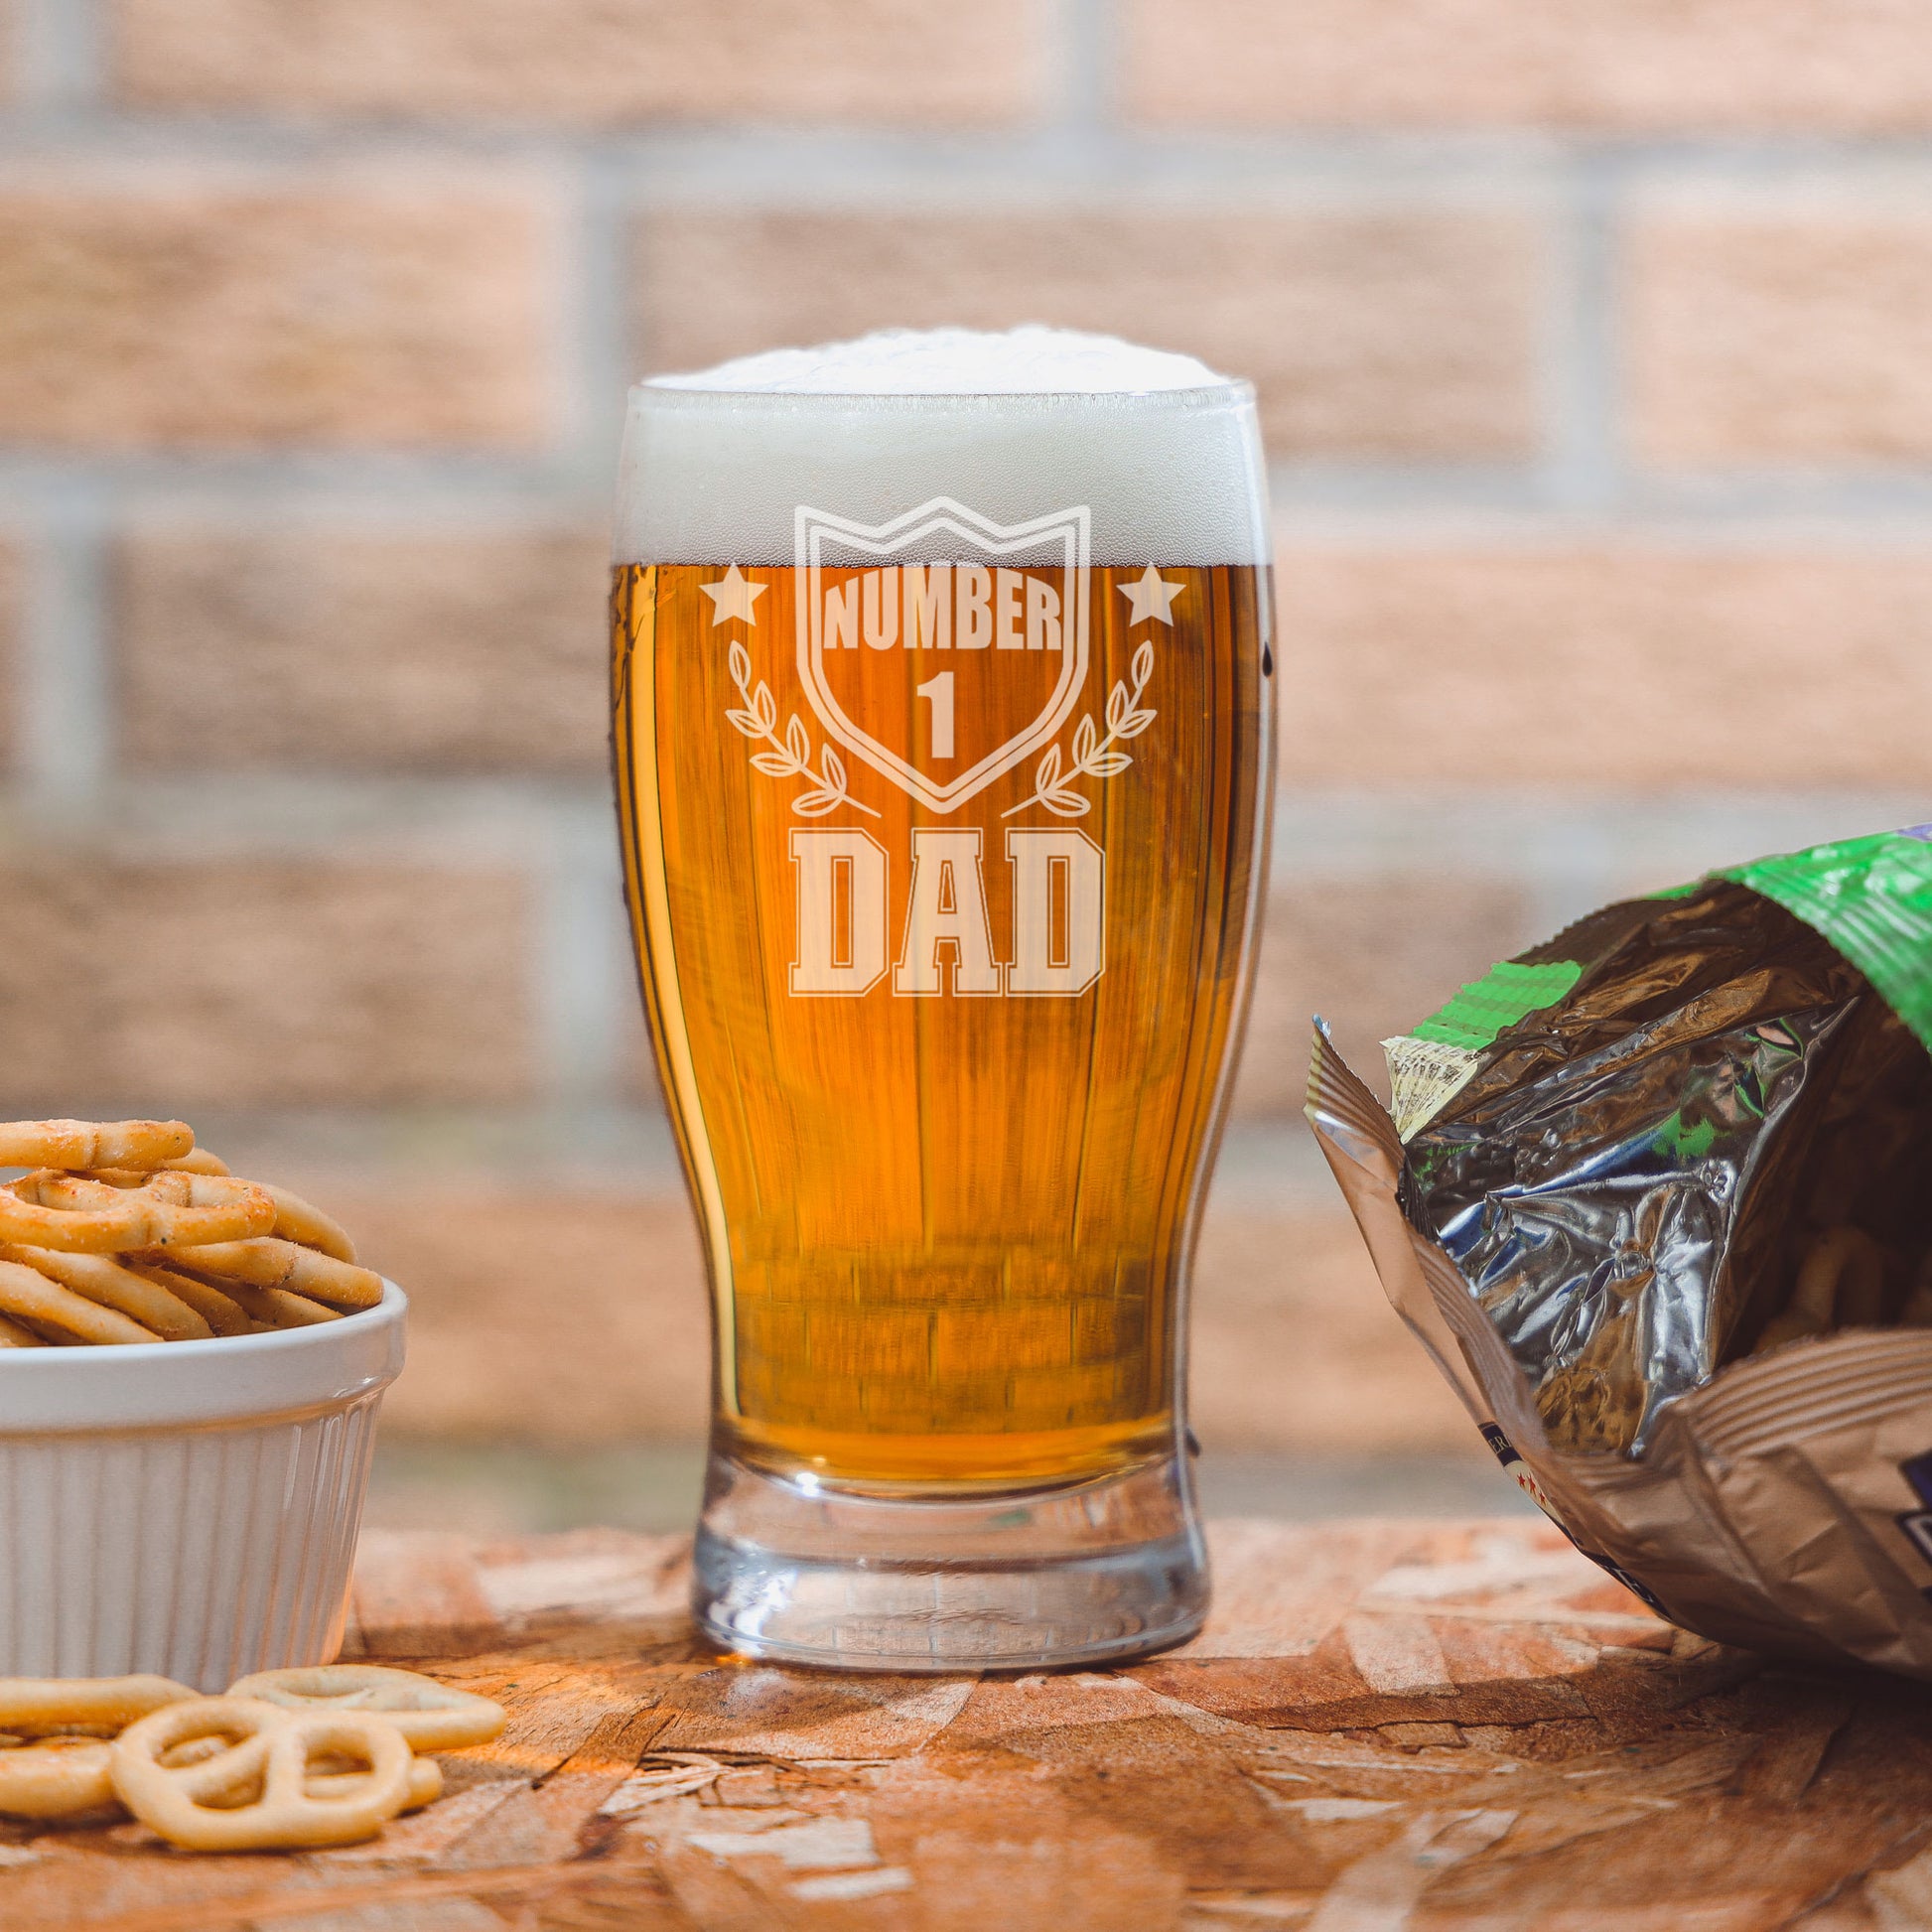 Number 1 Dad Engraved Beer Pint Glass  - Always Looking Good -   